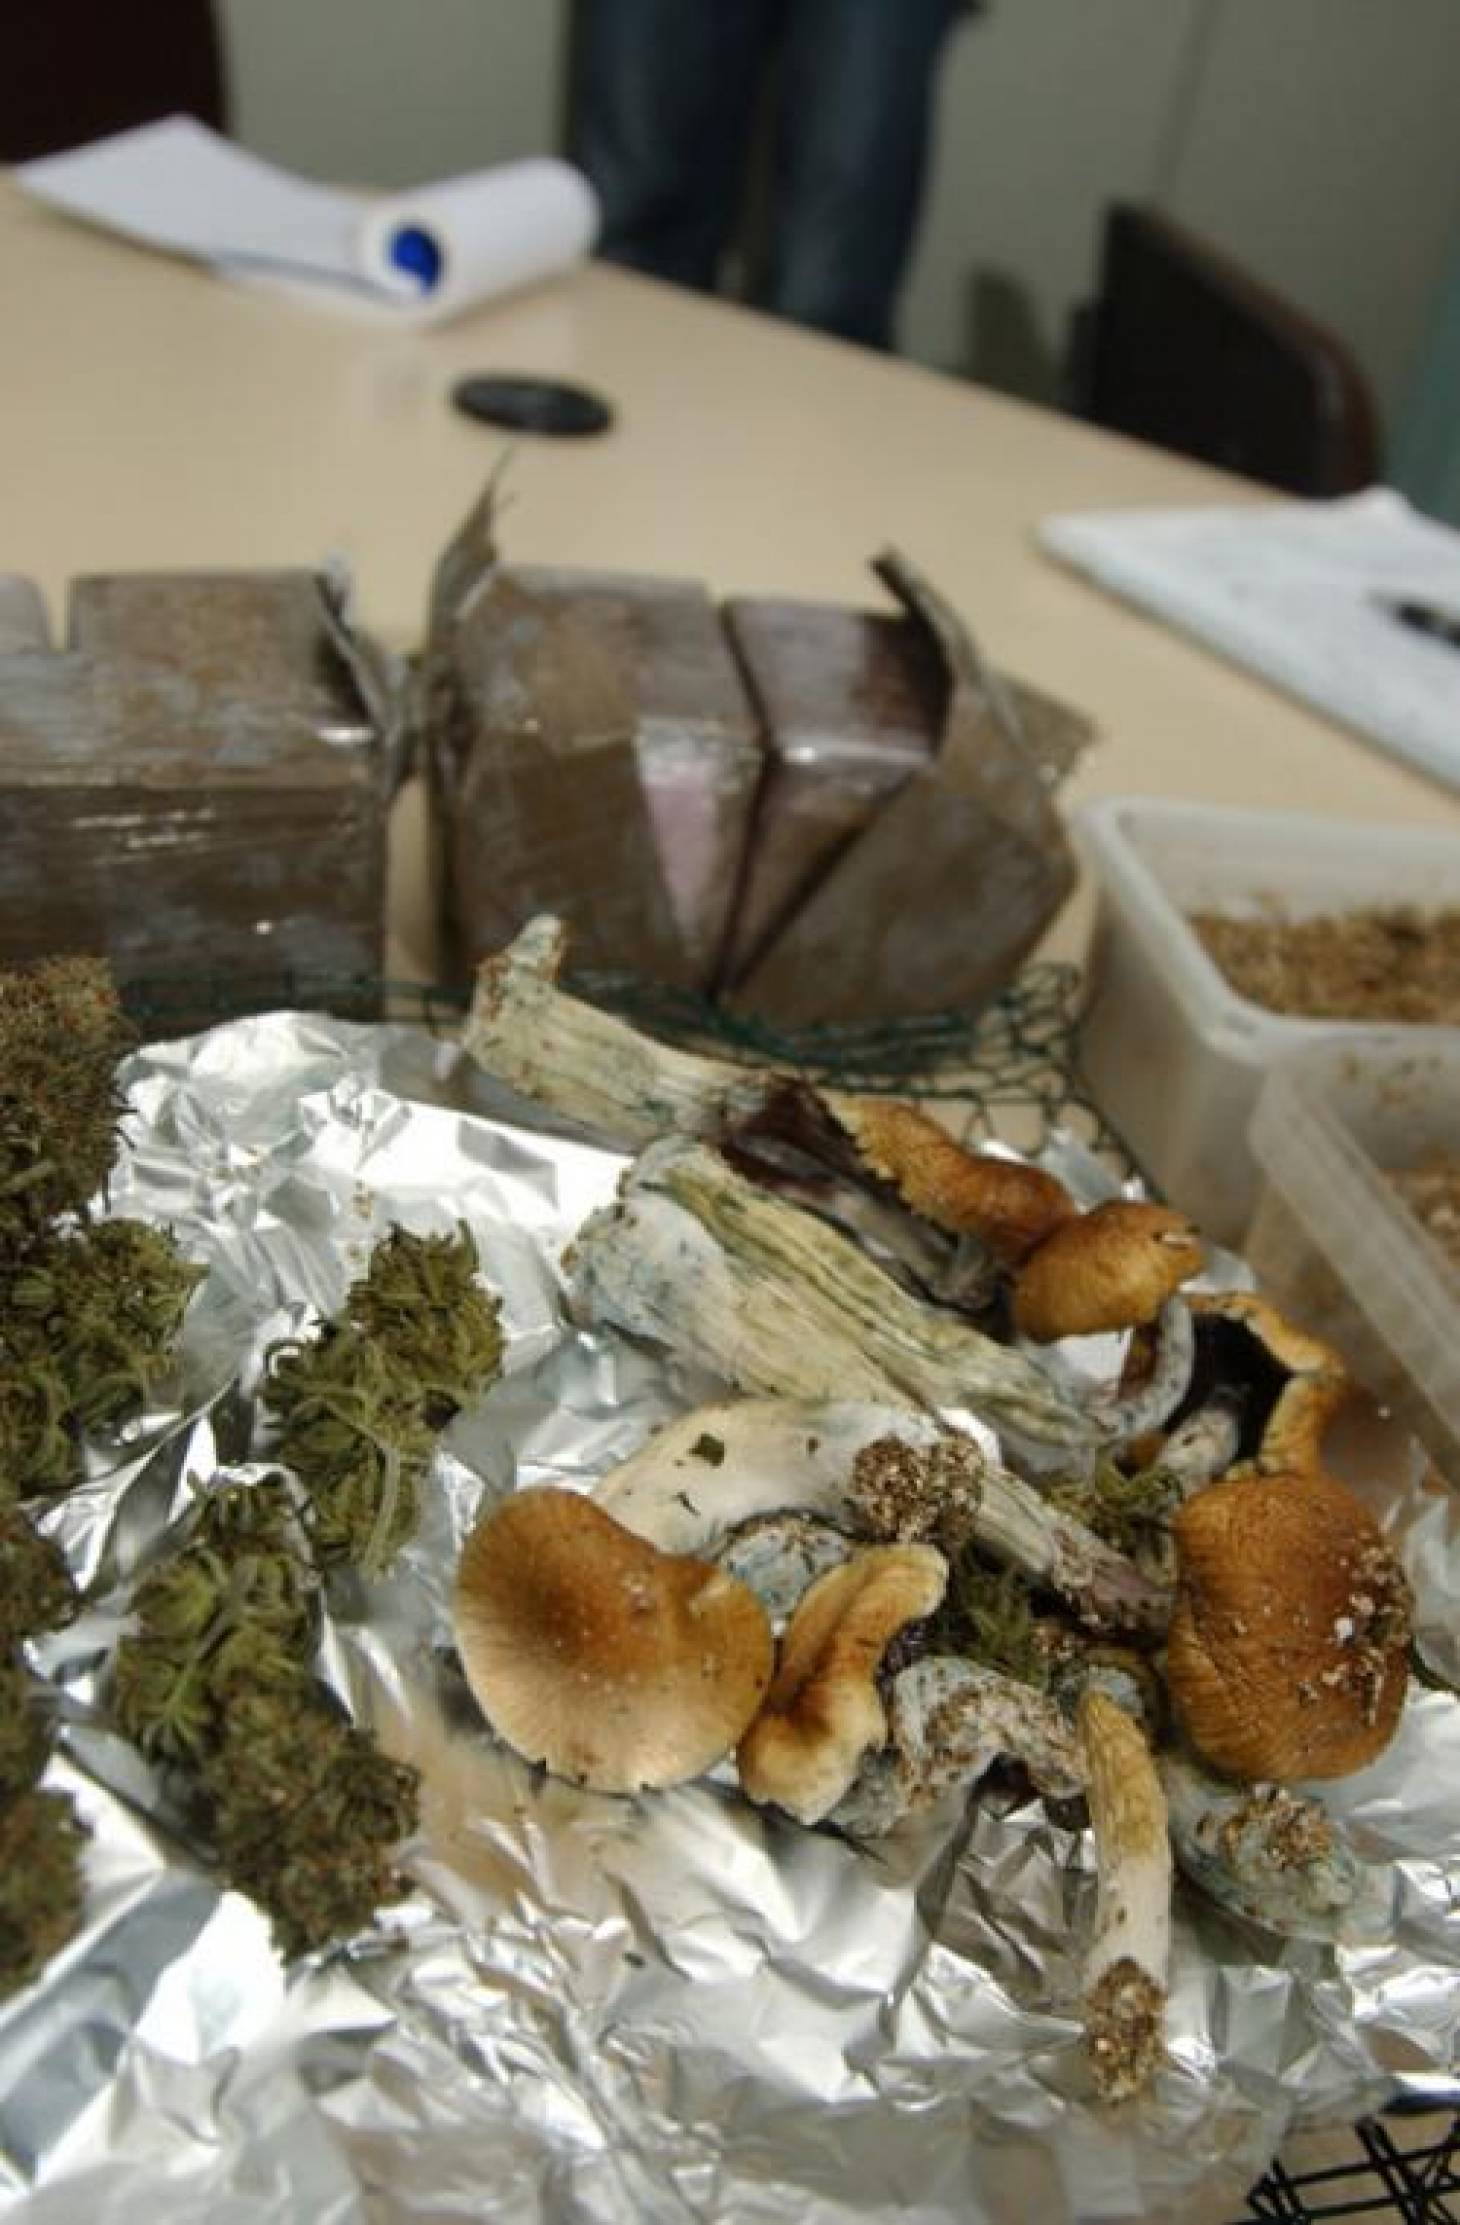 2kg de cannabis et champignons saisis